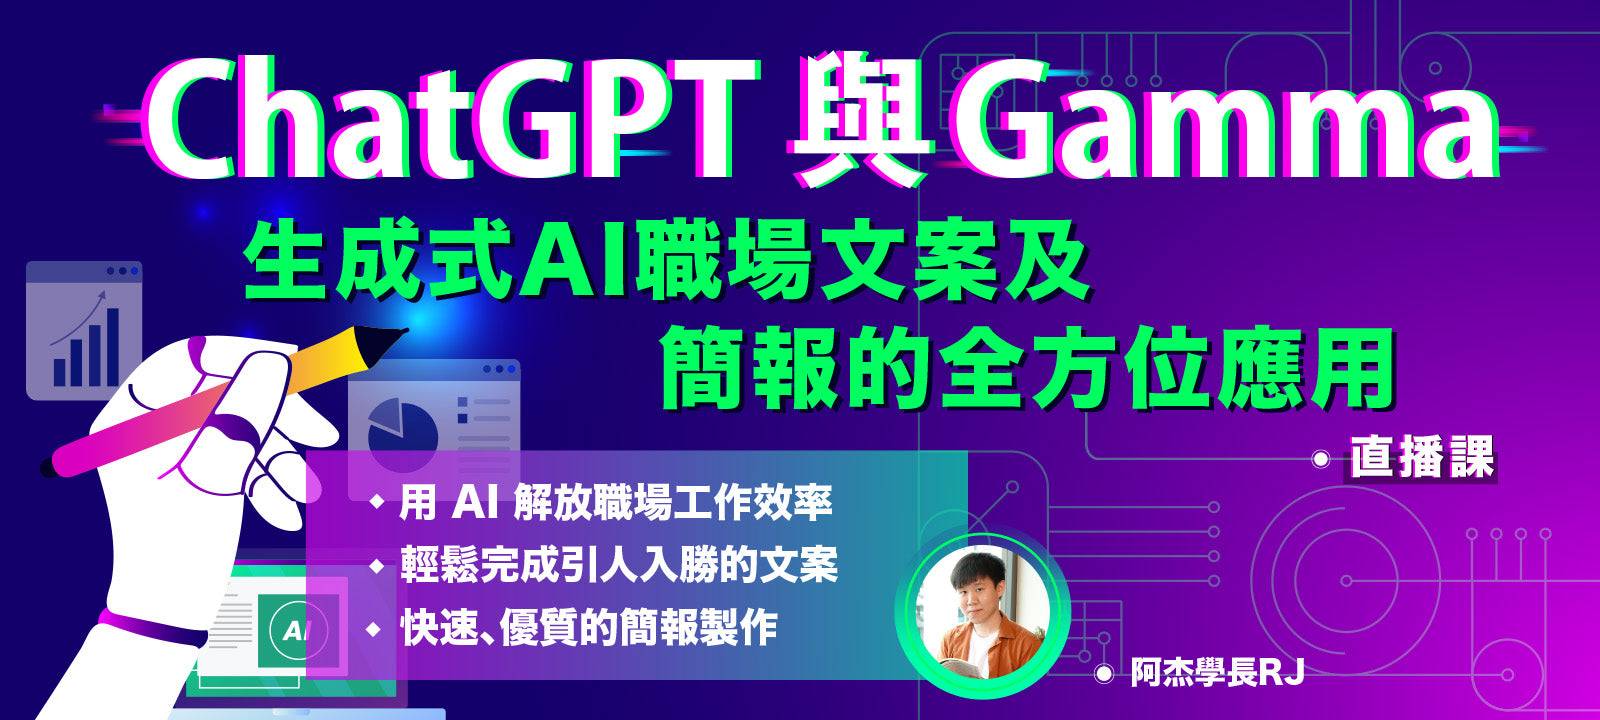 ChatGPT 與 Gamma：生成式 AI 職場文案及簡報的全方位應用